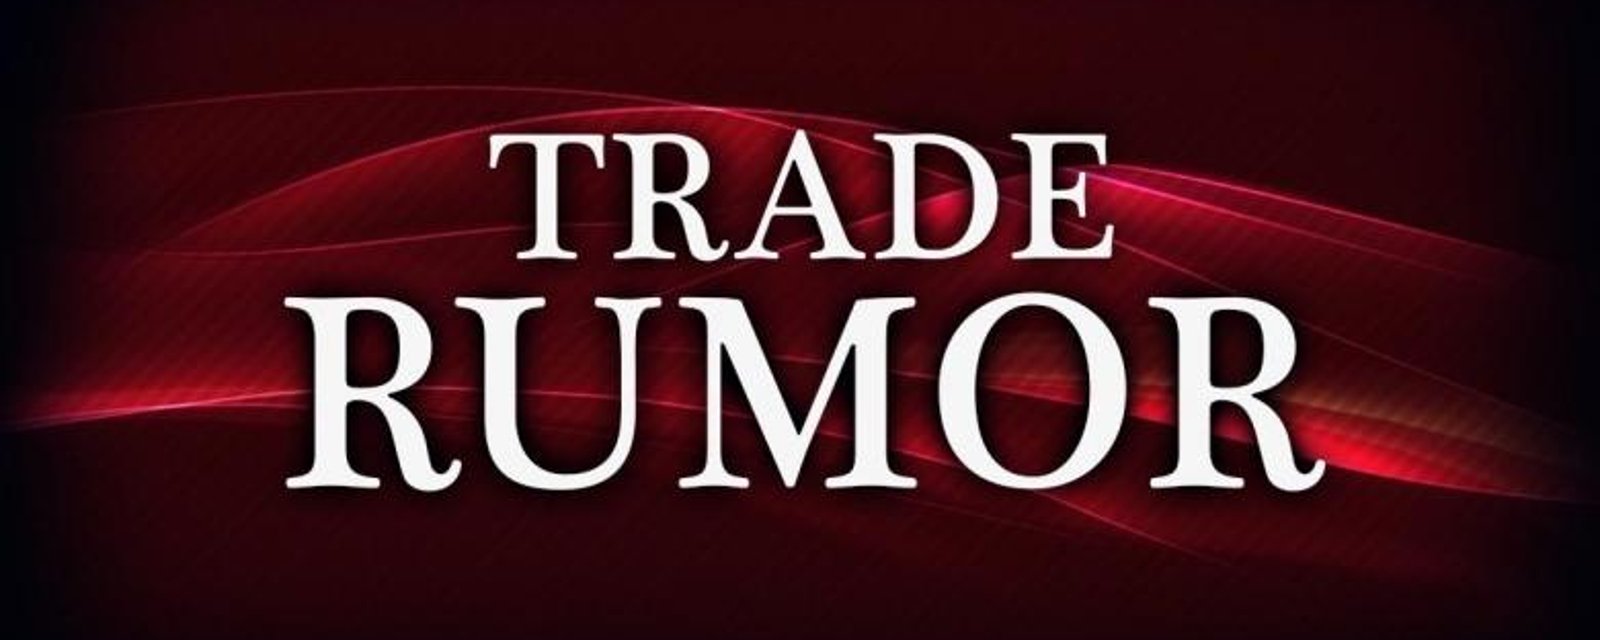 Rumor: Several teams involved in major trade rumor.